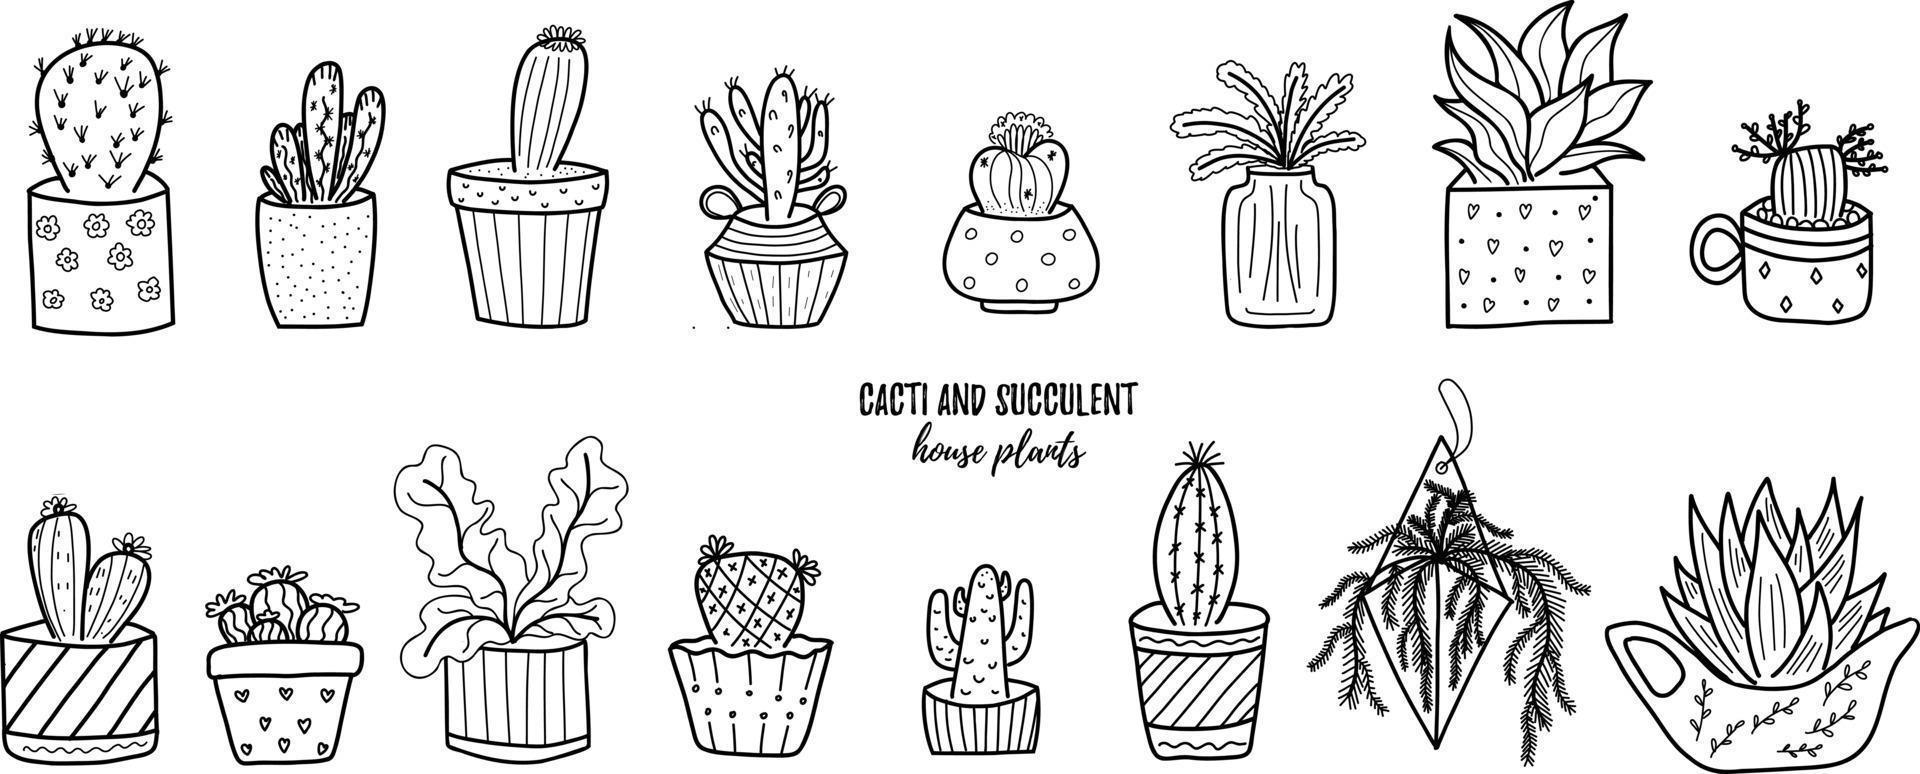 vector doodle cactus y suculenta colección de ilustraciones. plantas de la casa de arte de línea negra en un juego de macetas. genial para diferentes tipos de diseños y fondos